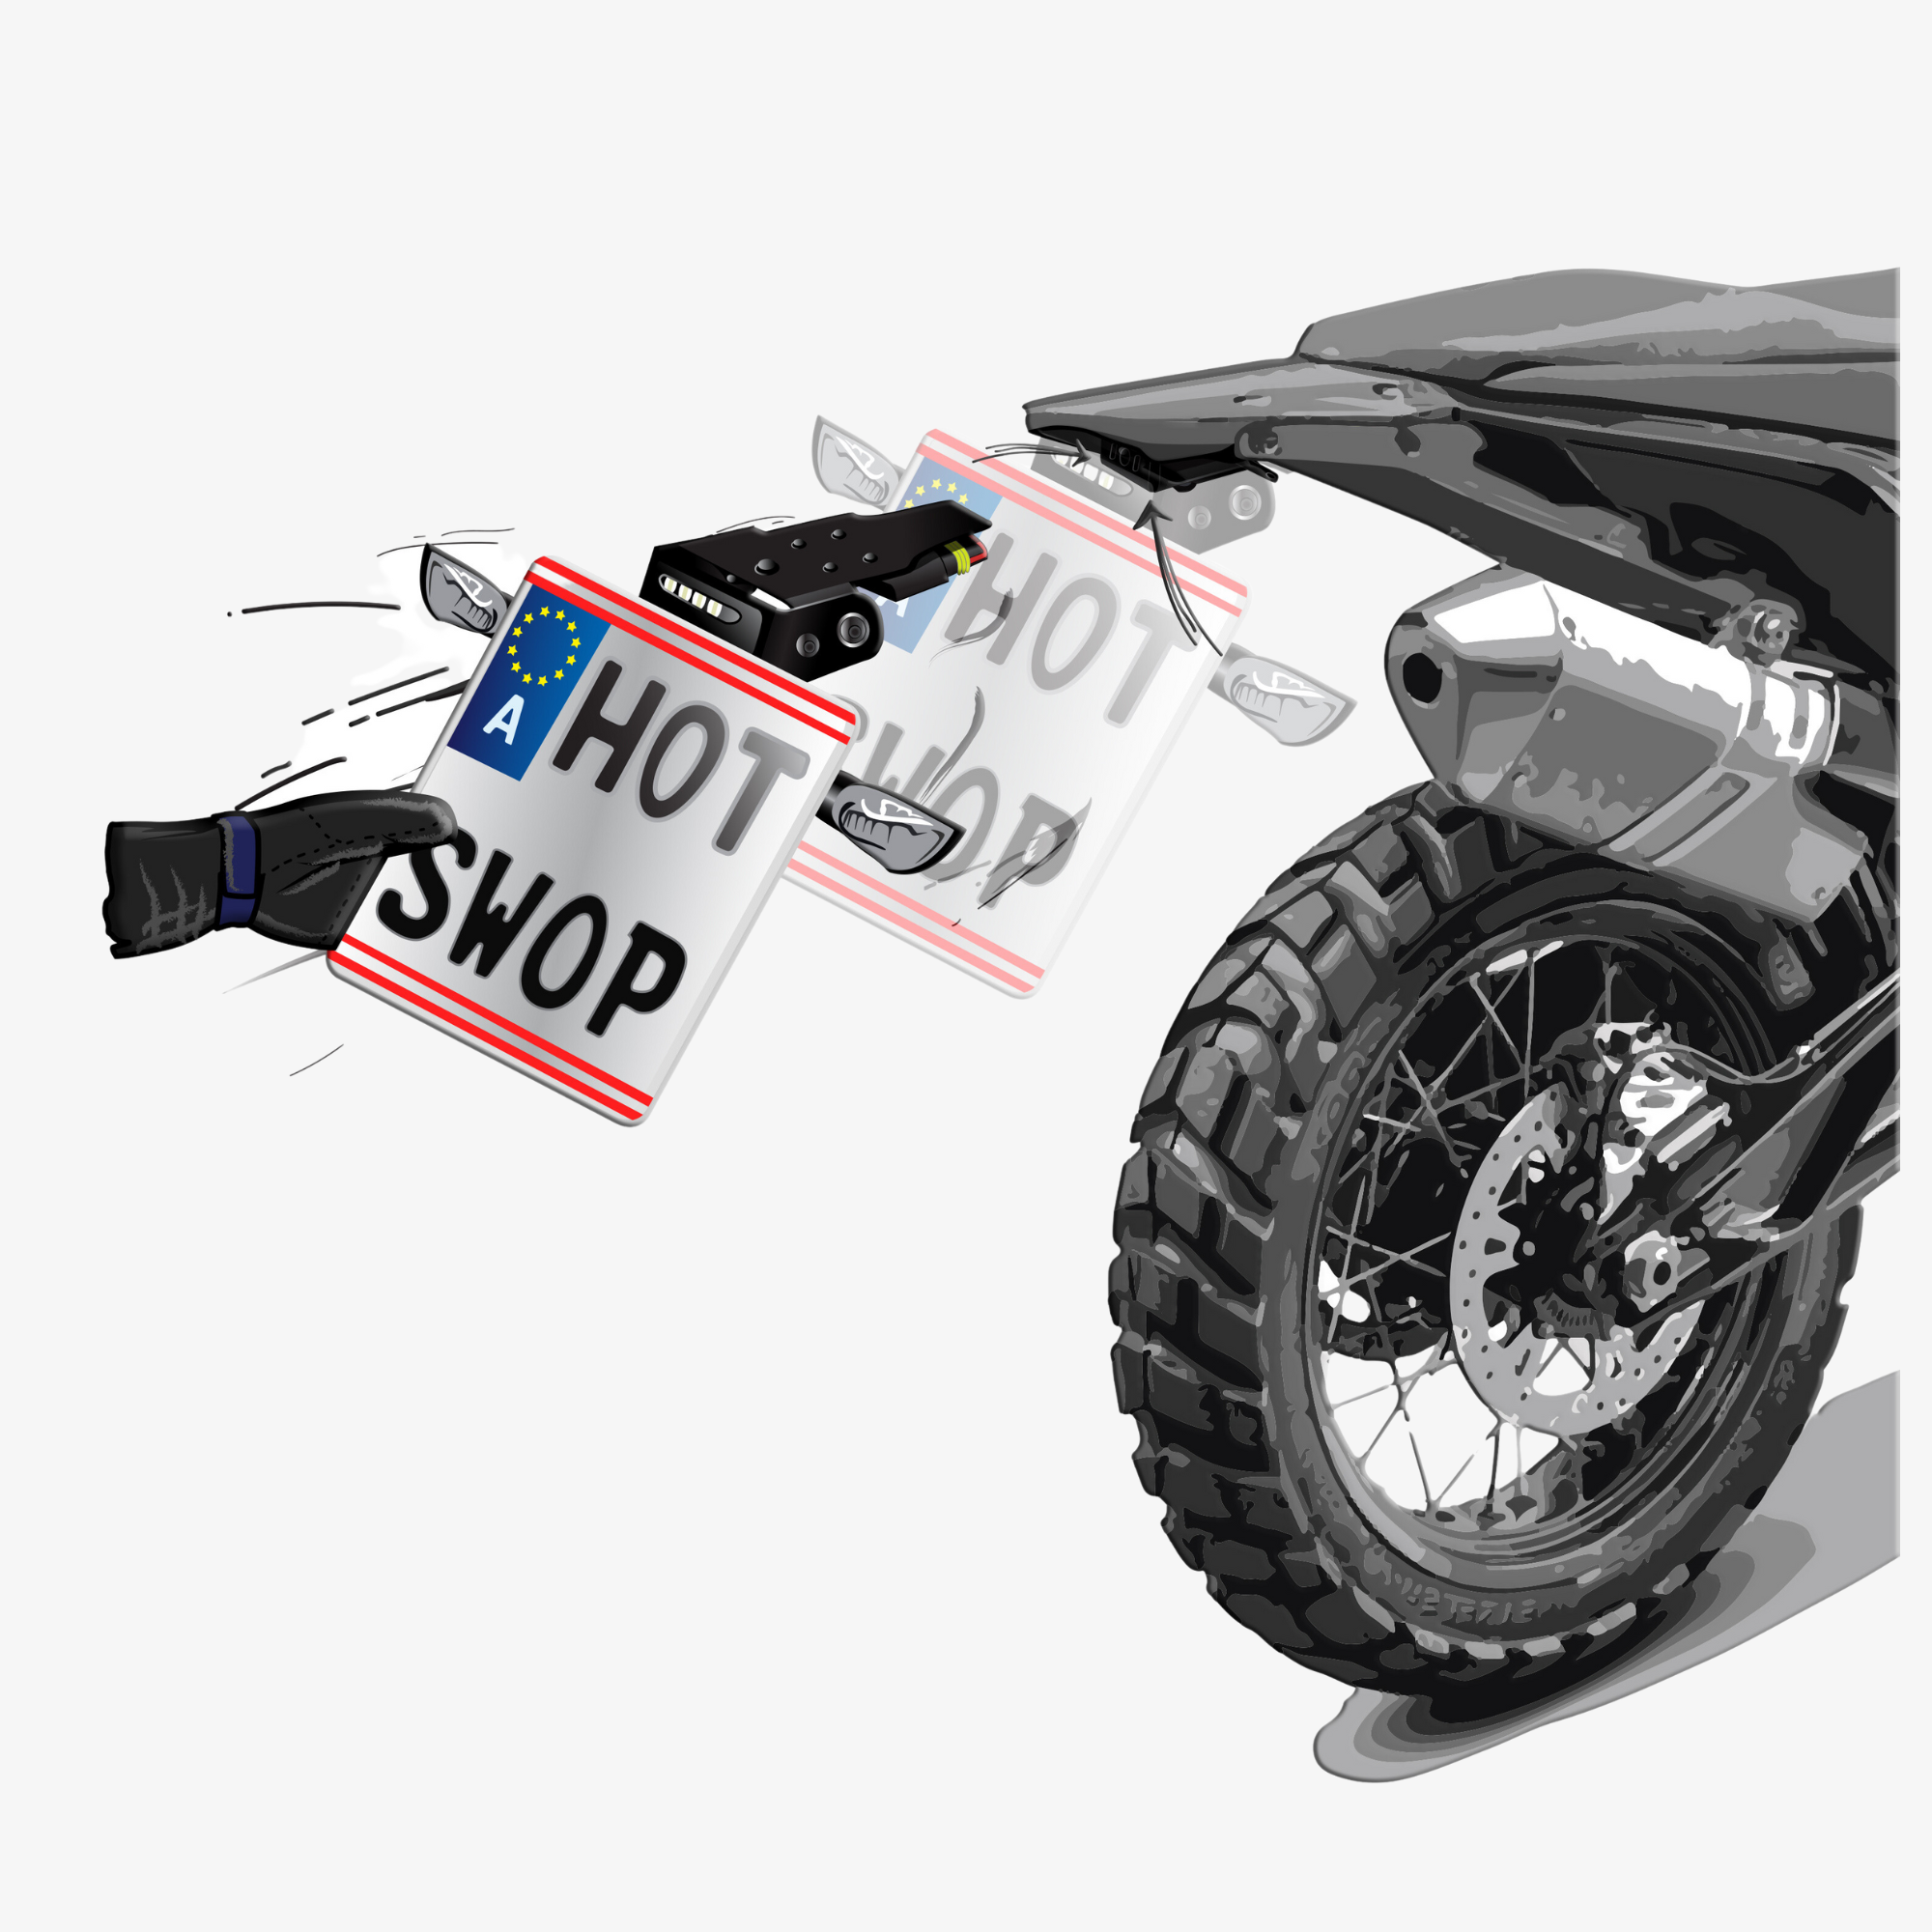 HotSwop Kennzeichenhalter Enduro Kit ALLOY-EDITION (Für ein Motorrad) -  Hard Enduro Shop